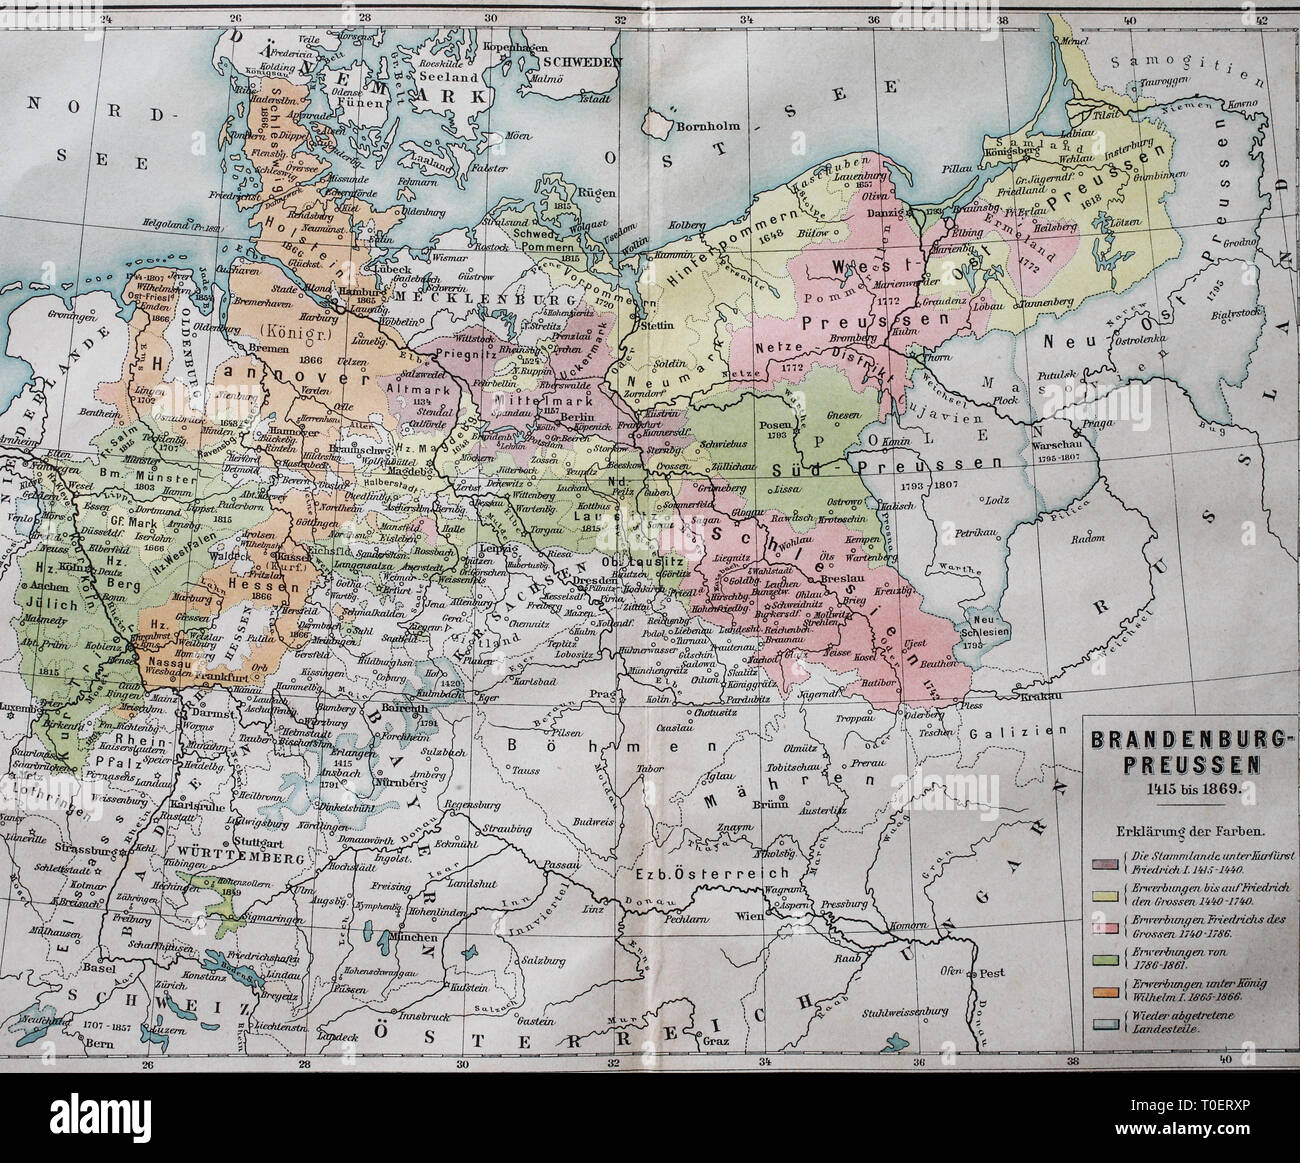 historical map, Brandenburg-Prussia from 1415-1869  /  Historische Landkarte, Brandenburg-Preussen von 1415-1869 Stock Photo